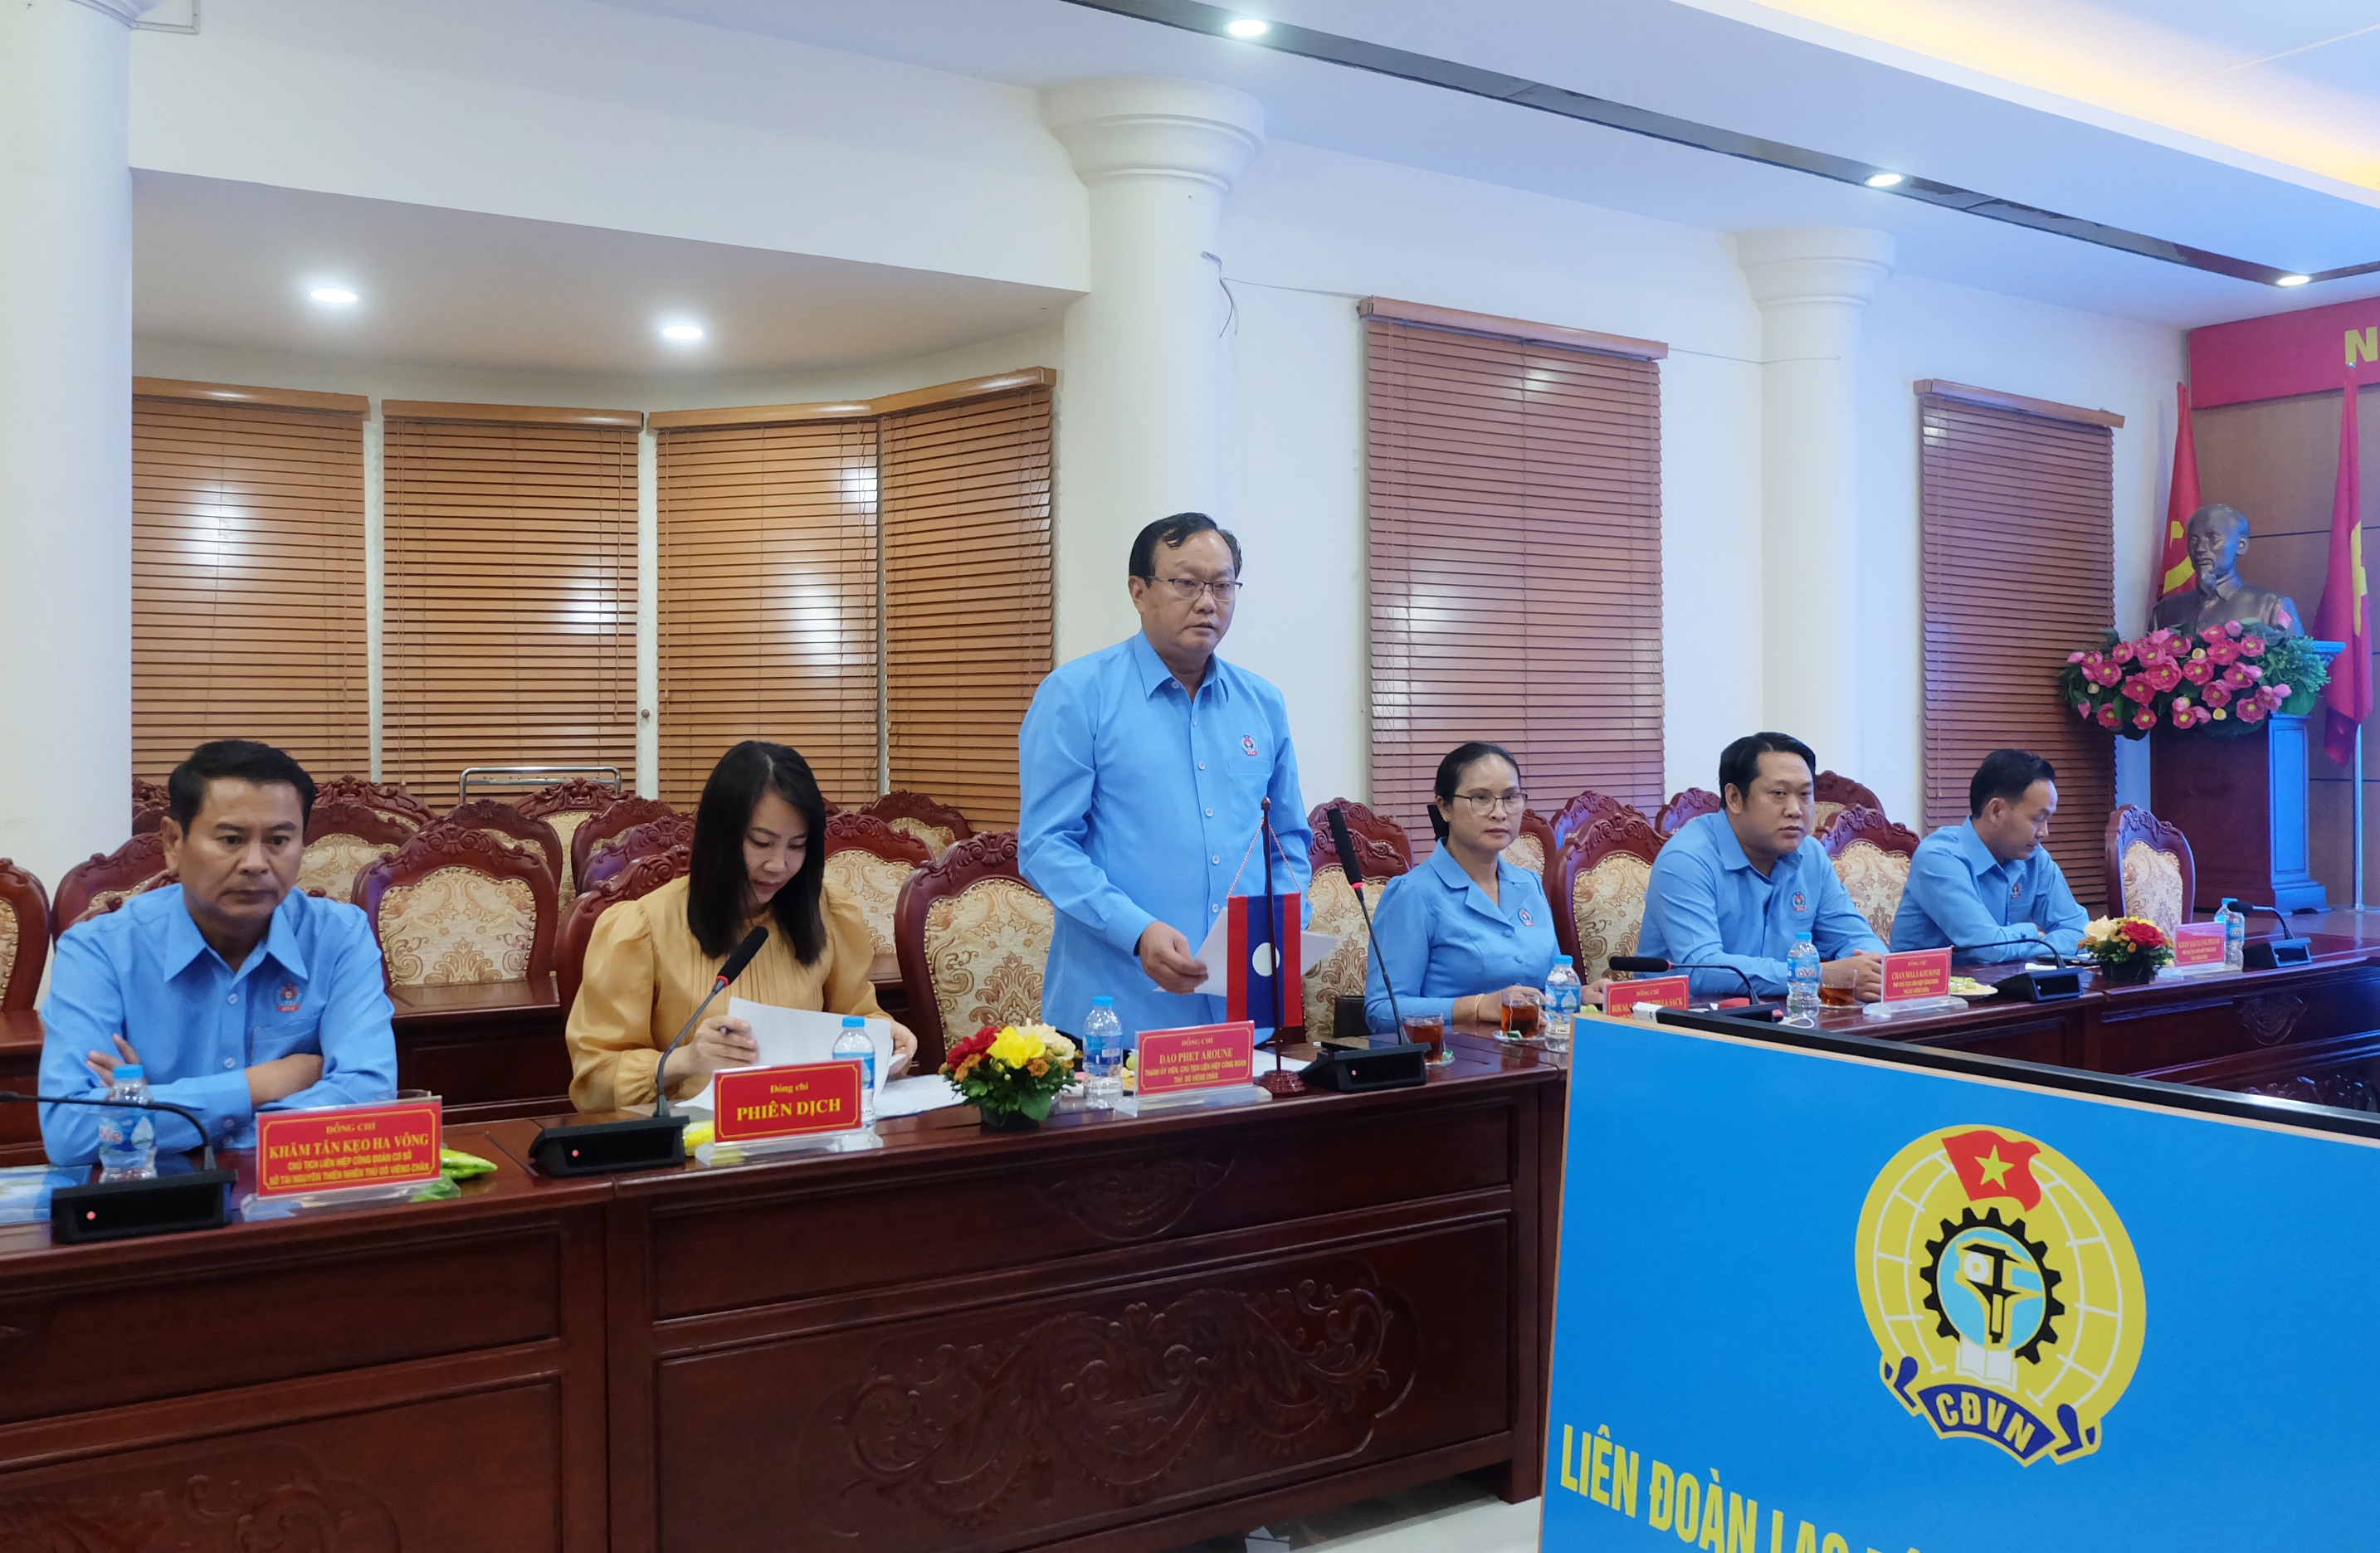  Chủ tịch LHCĐ Thủ đô Viêng Chăn Đao Phet Aroune phát biểu tại buổi hội đàm.